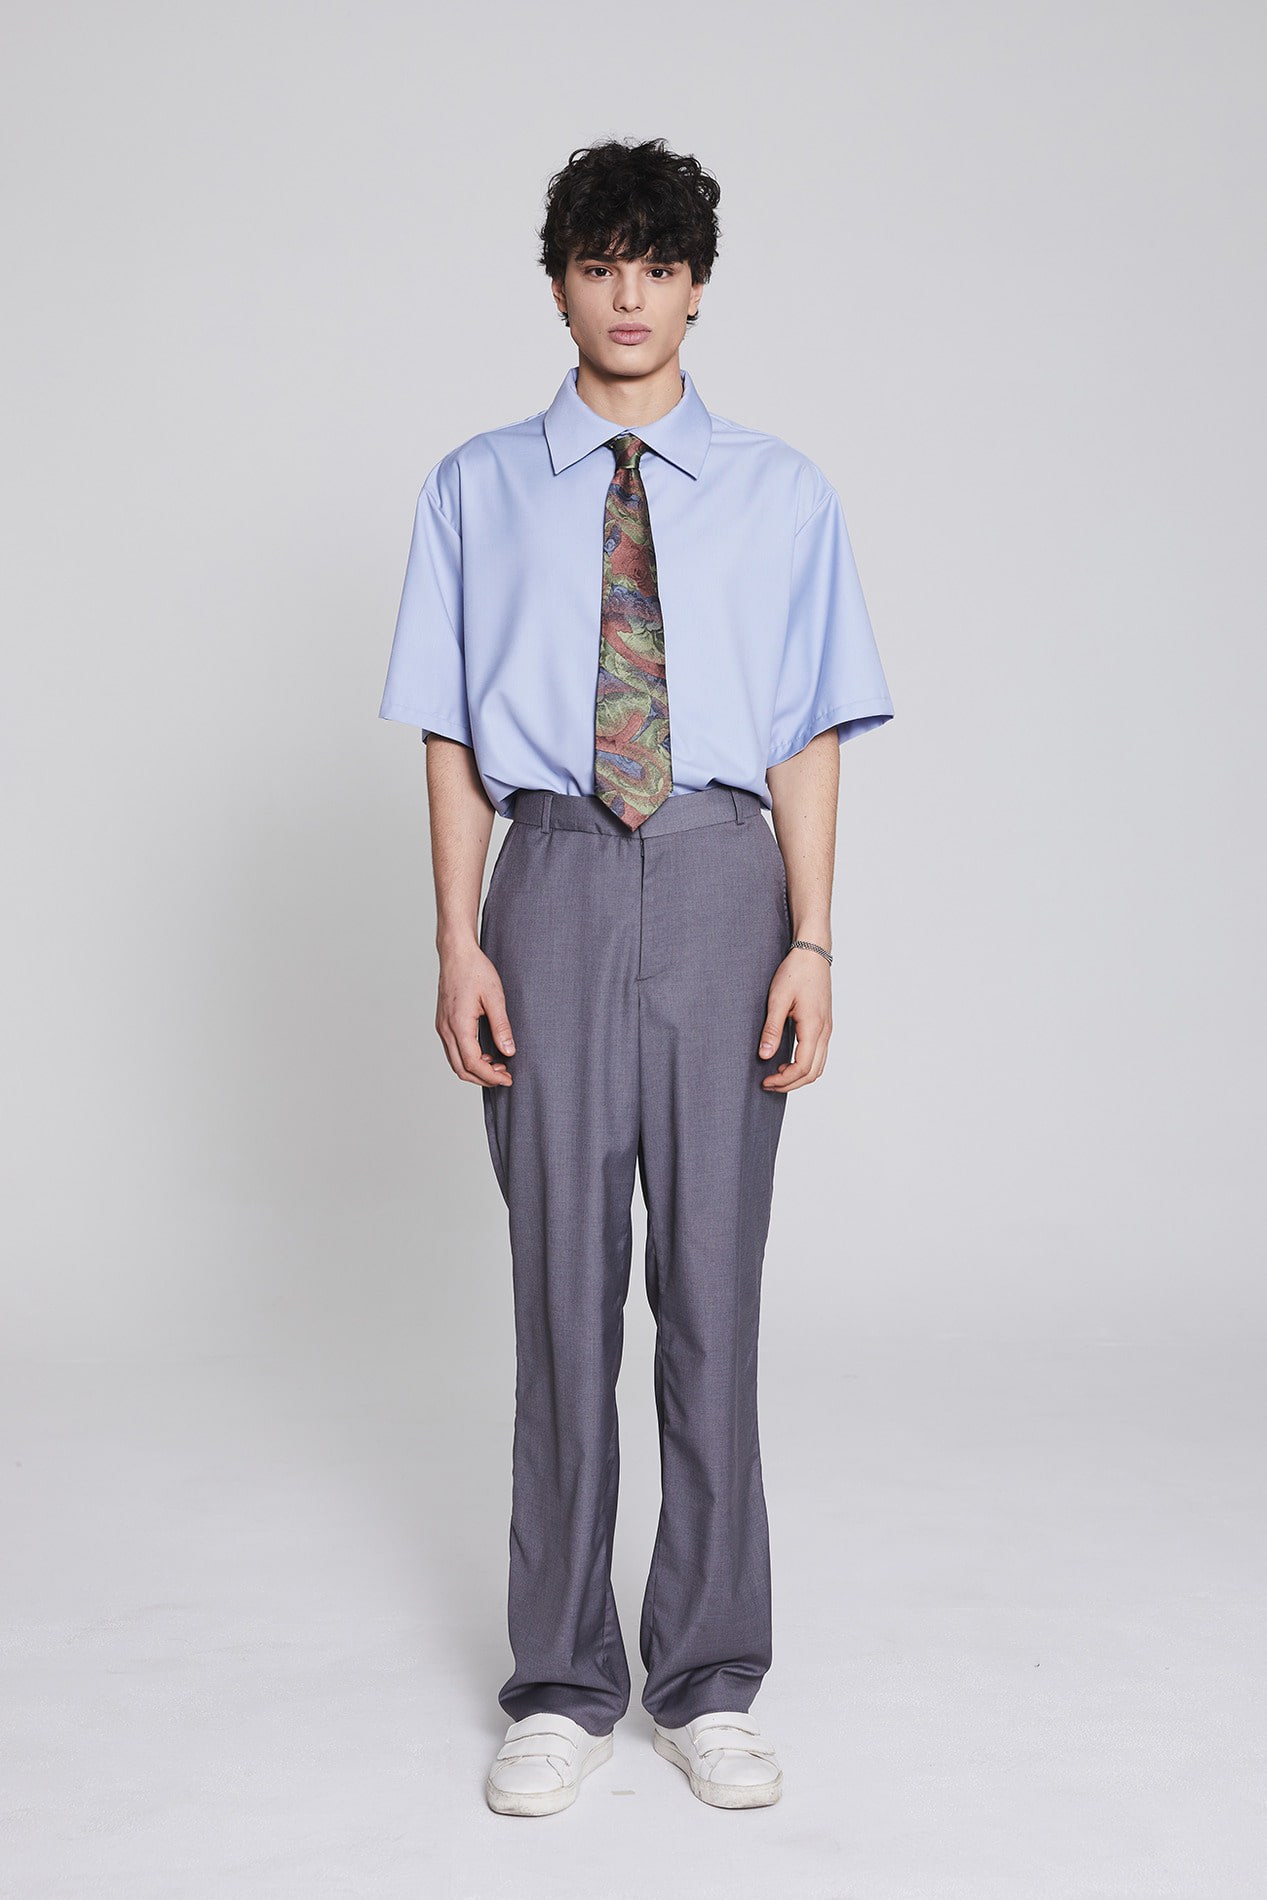 MILLIN Longwide trousers(gray)